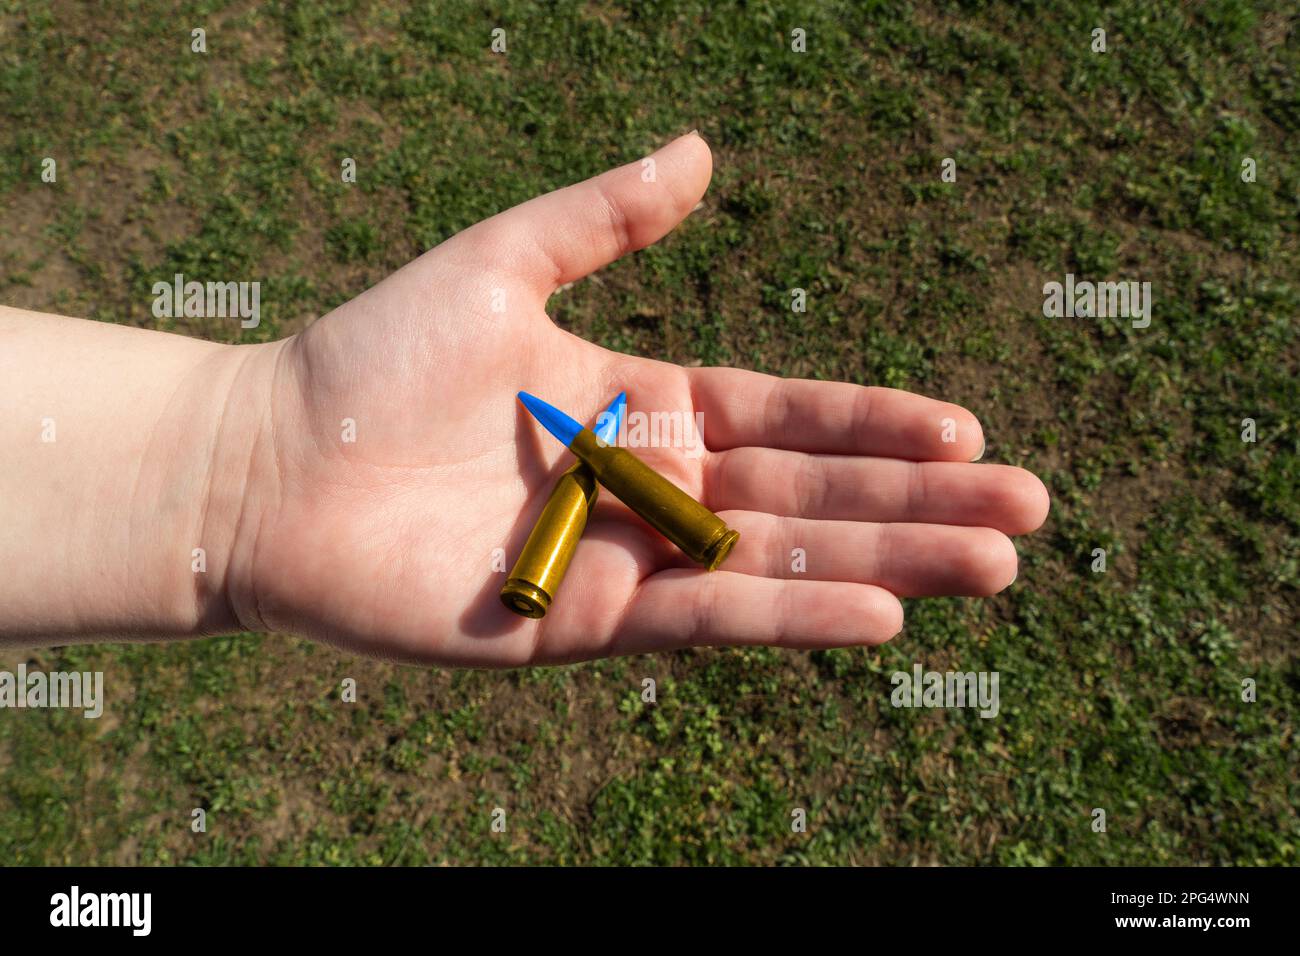 Zwei gelb-blaue Gewehrpatronen in der Hand vor grünem Gras (nationale Symbole der Ukraine). Das Konzept der militärischen Unterstützung für die Ukraine Stockfoto